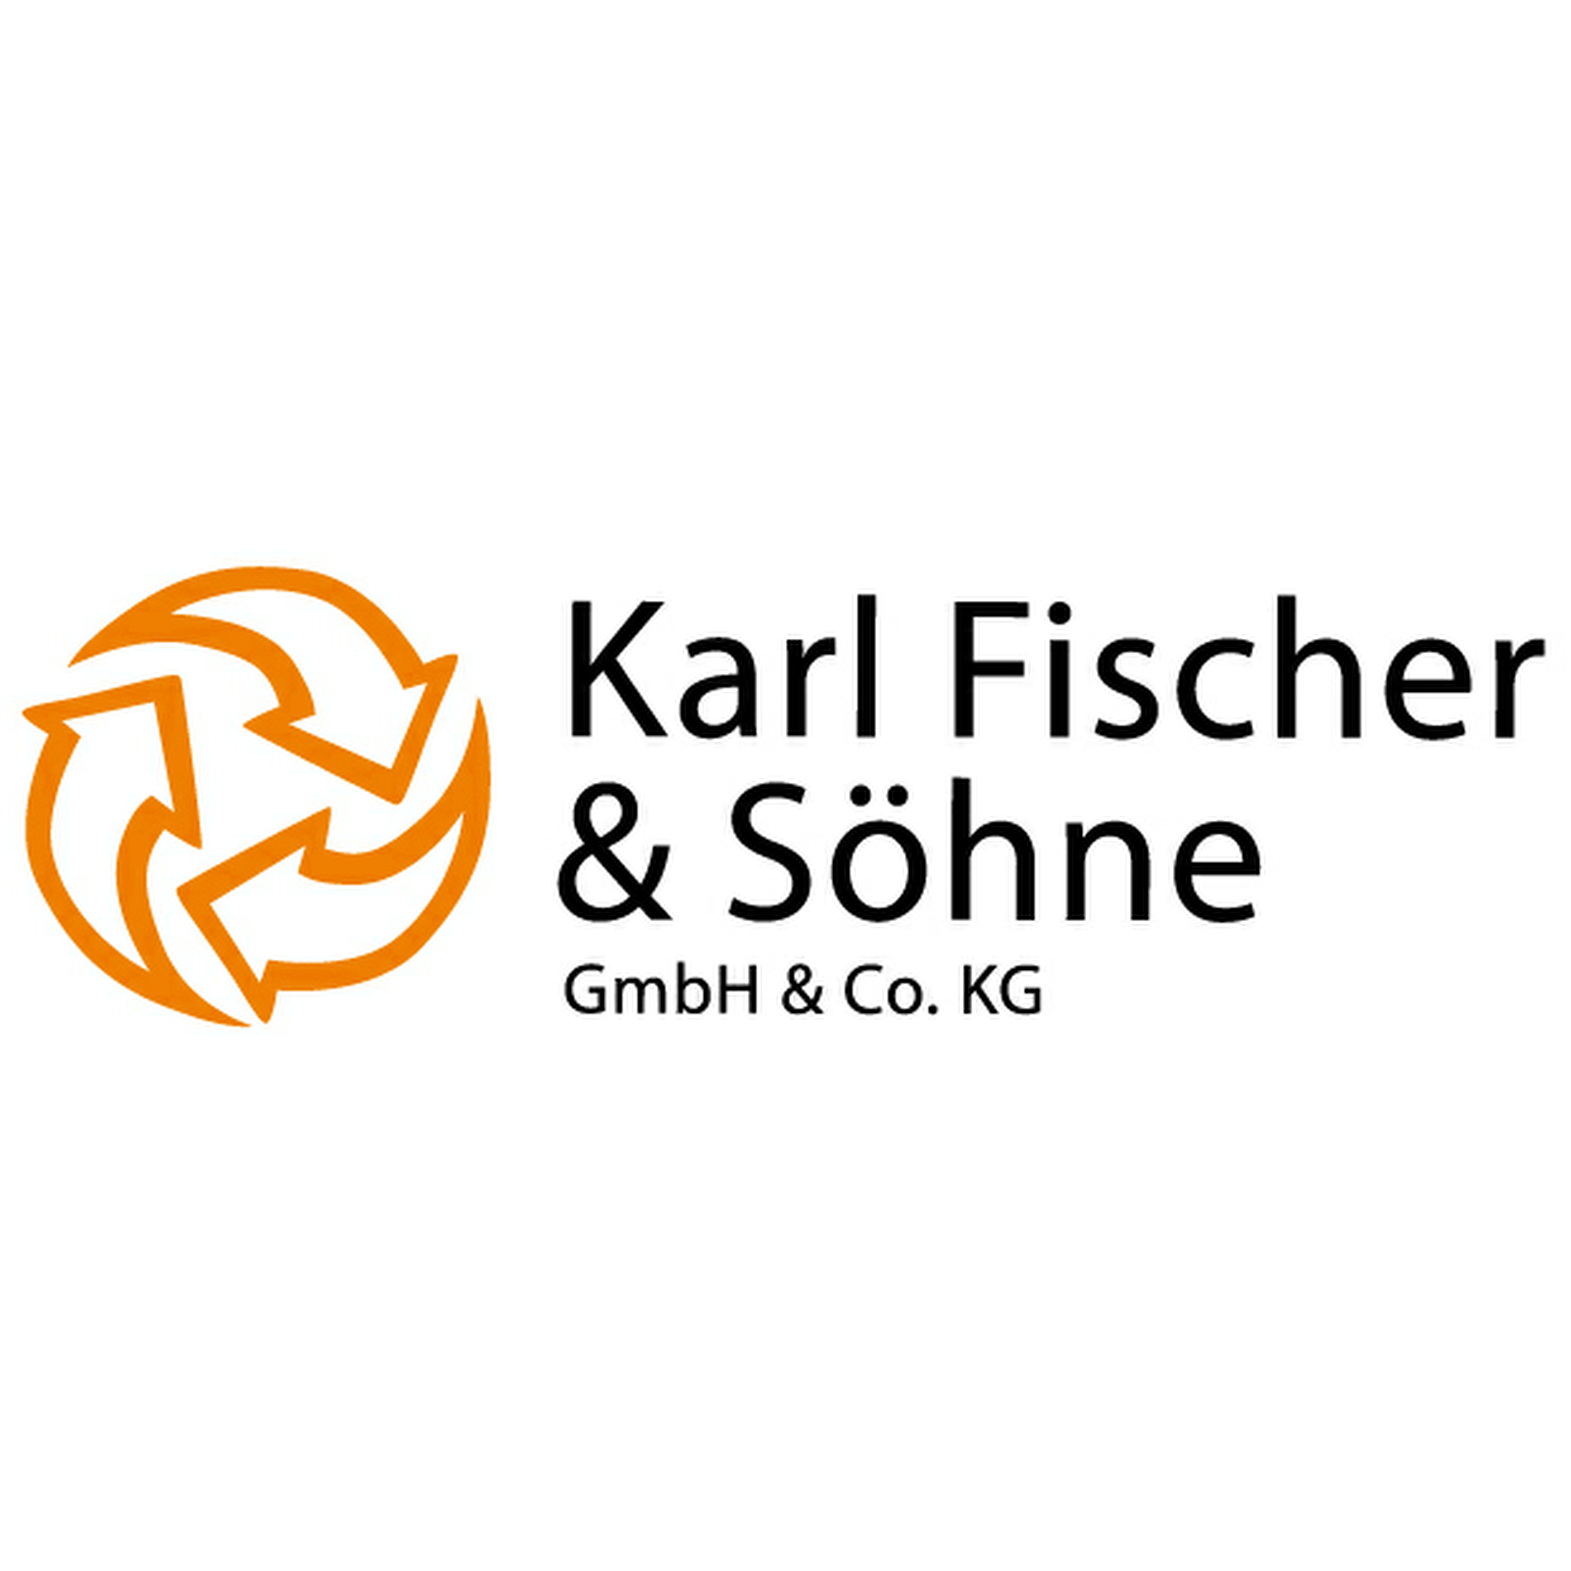 Fischer Karl in Würzburg - Logo